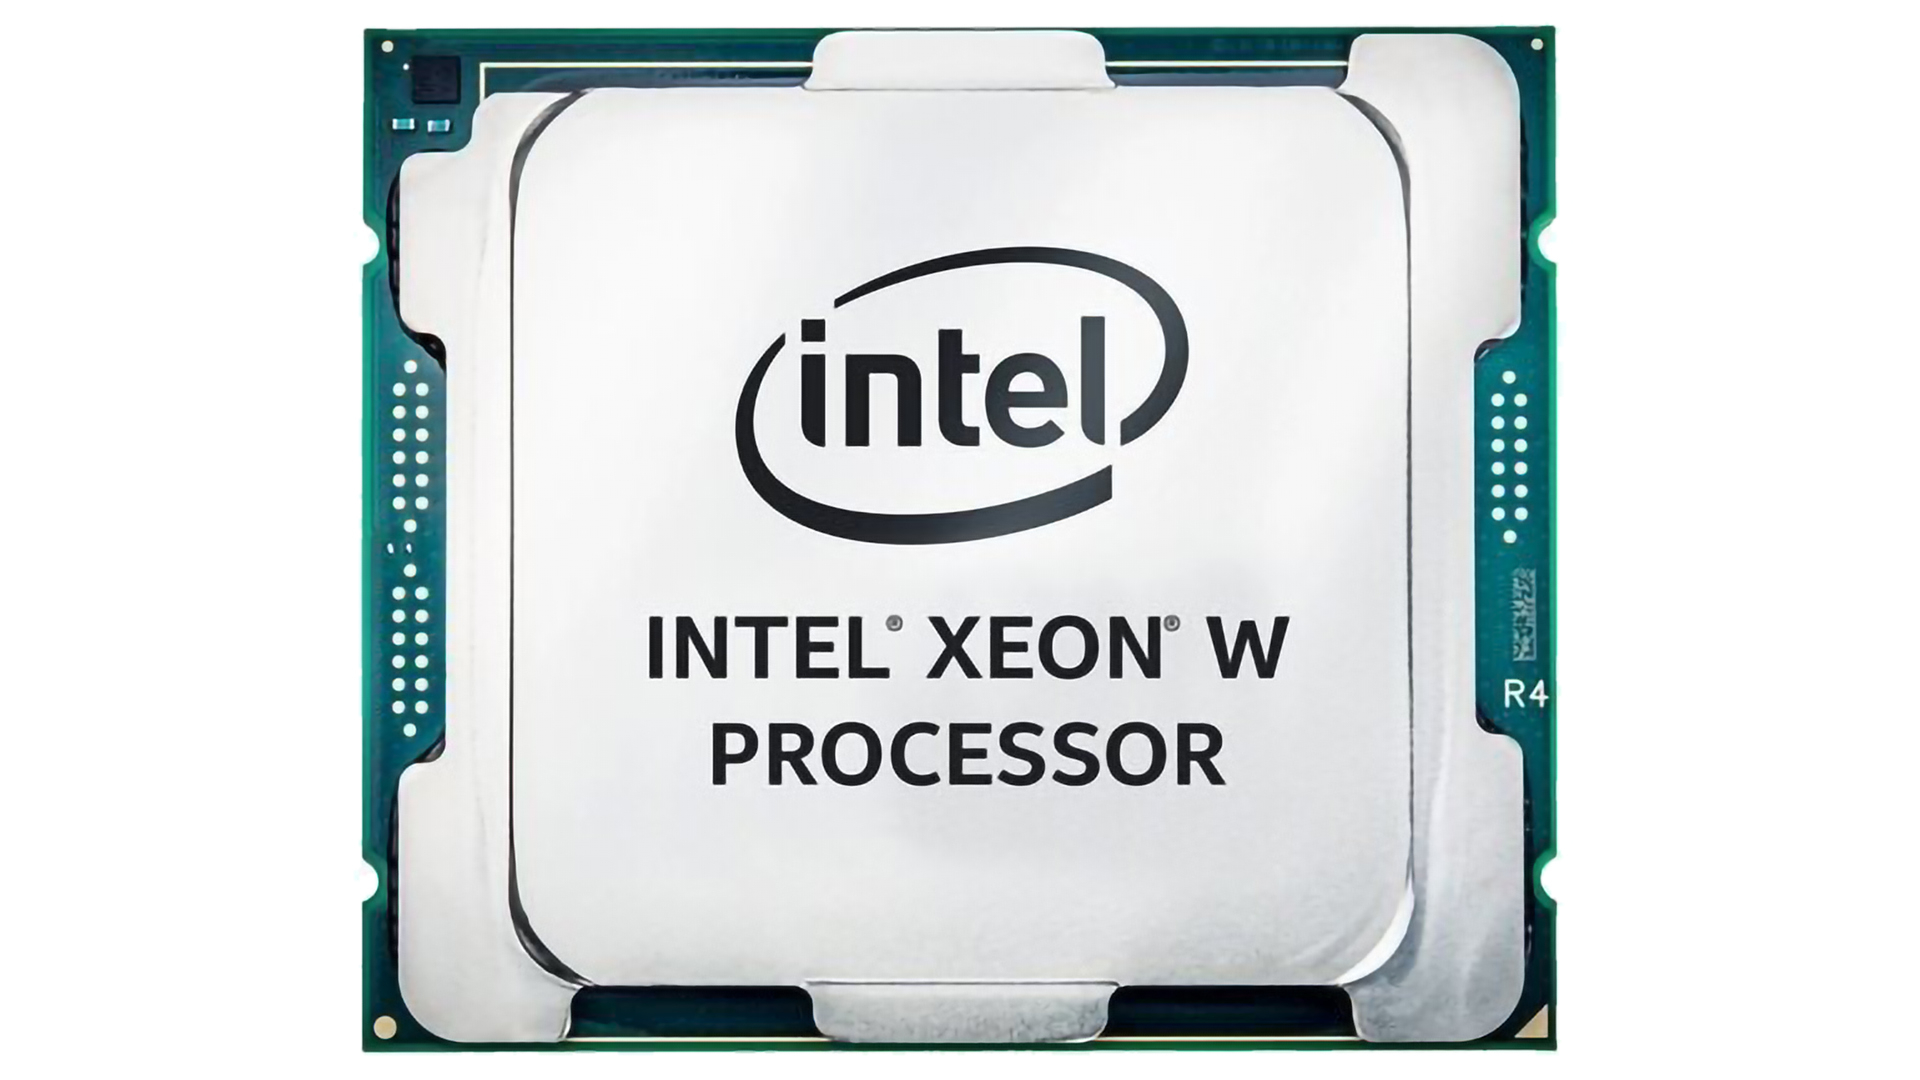 Intel Xeon W2200 CPU